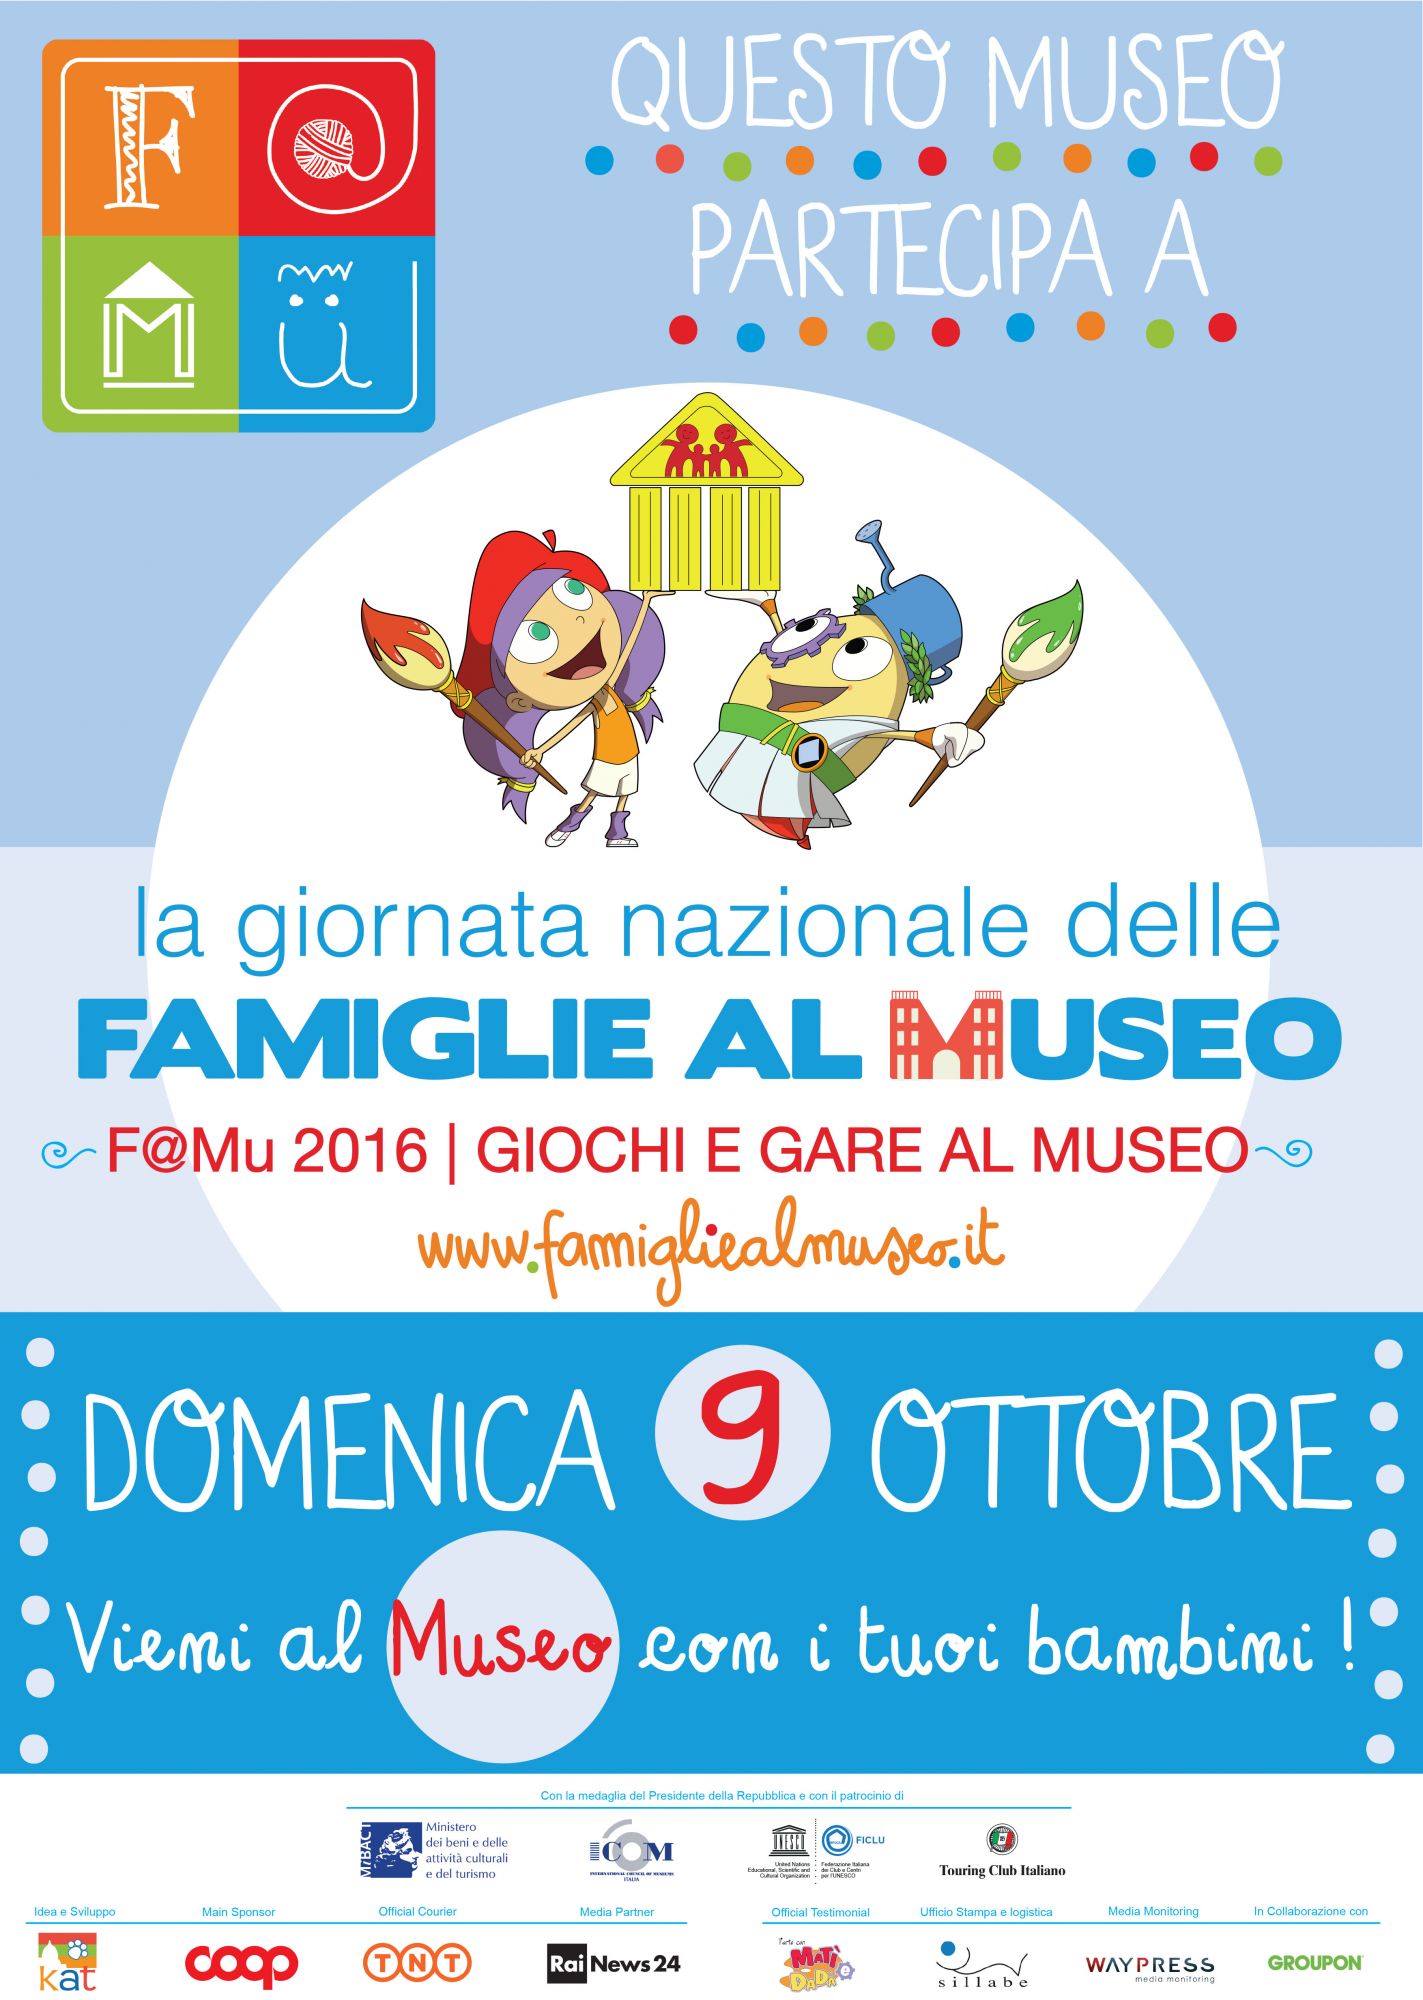 La Fondazione Matteucci per la Giornata Nazionale delle Famiglie al Museo